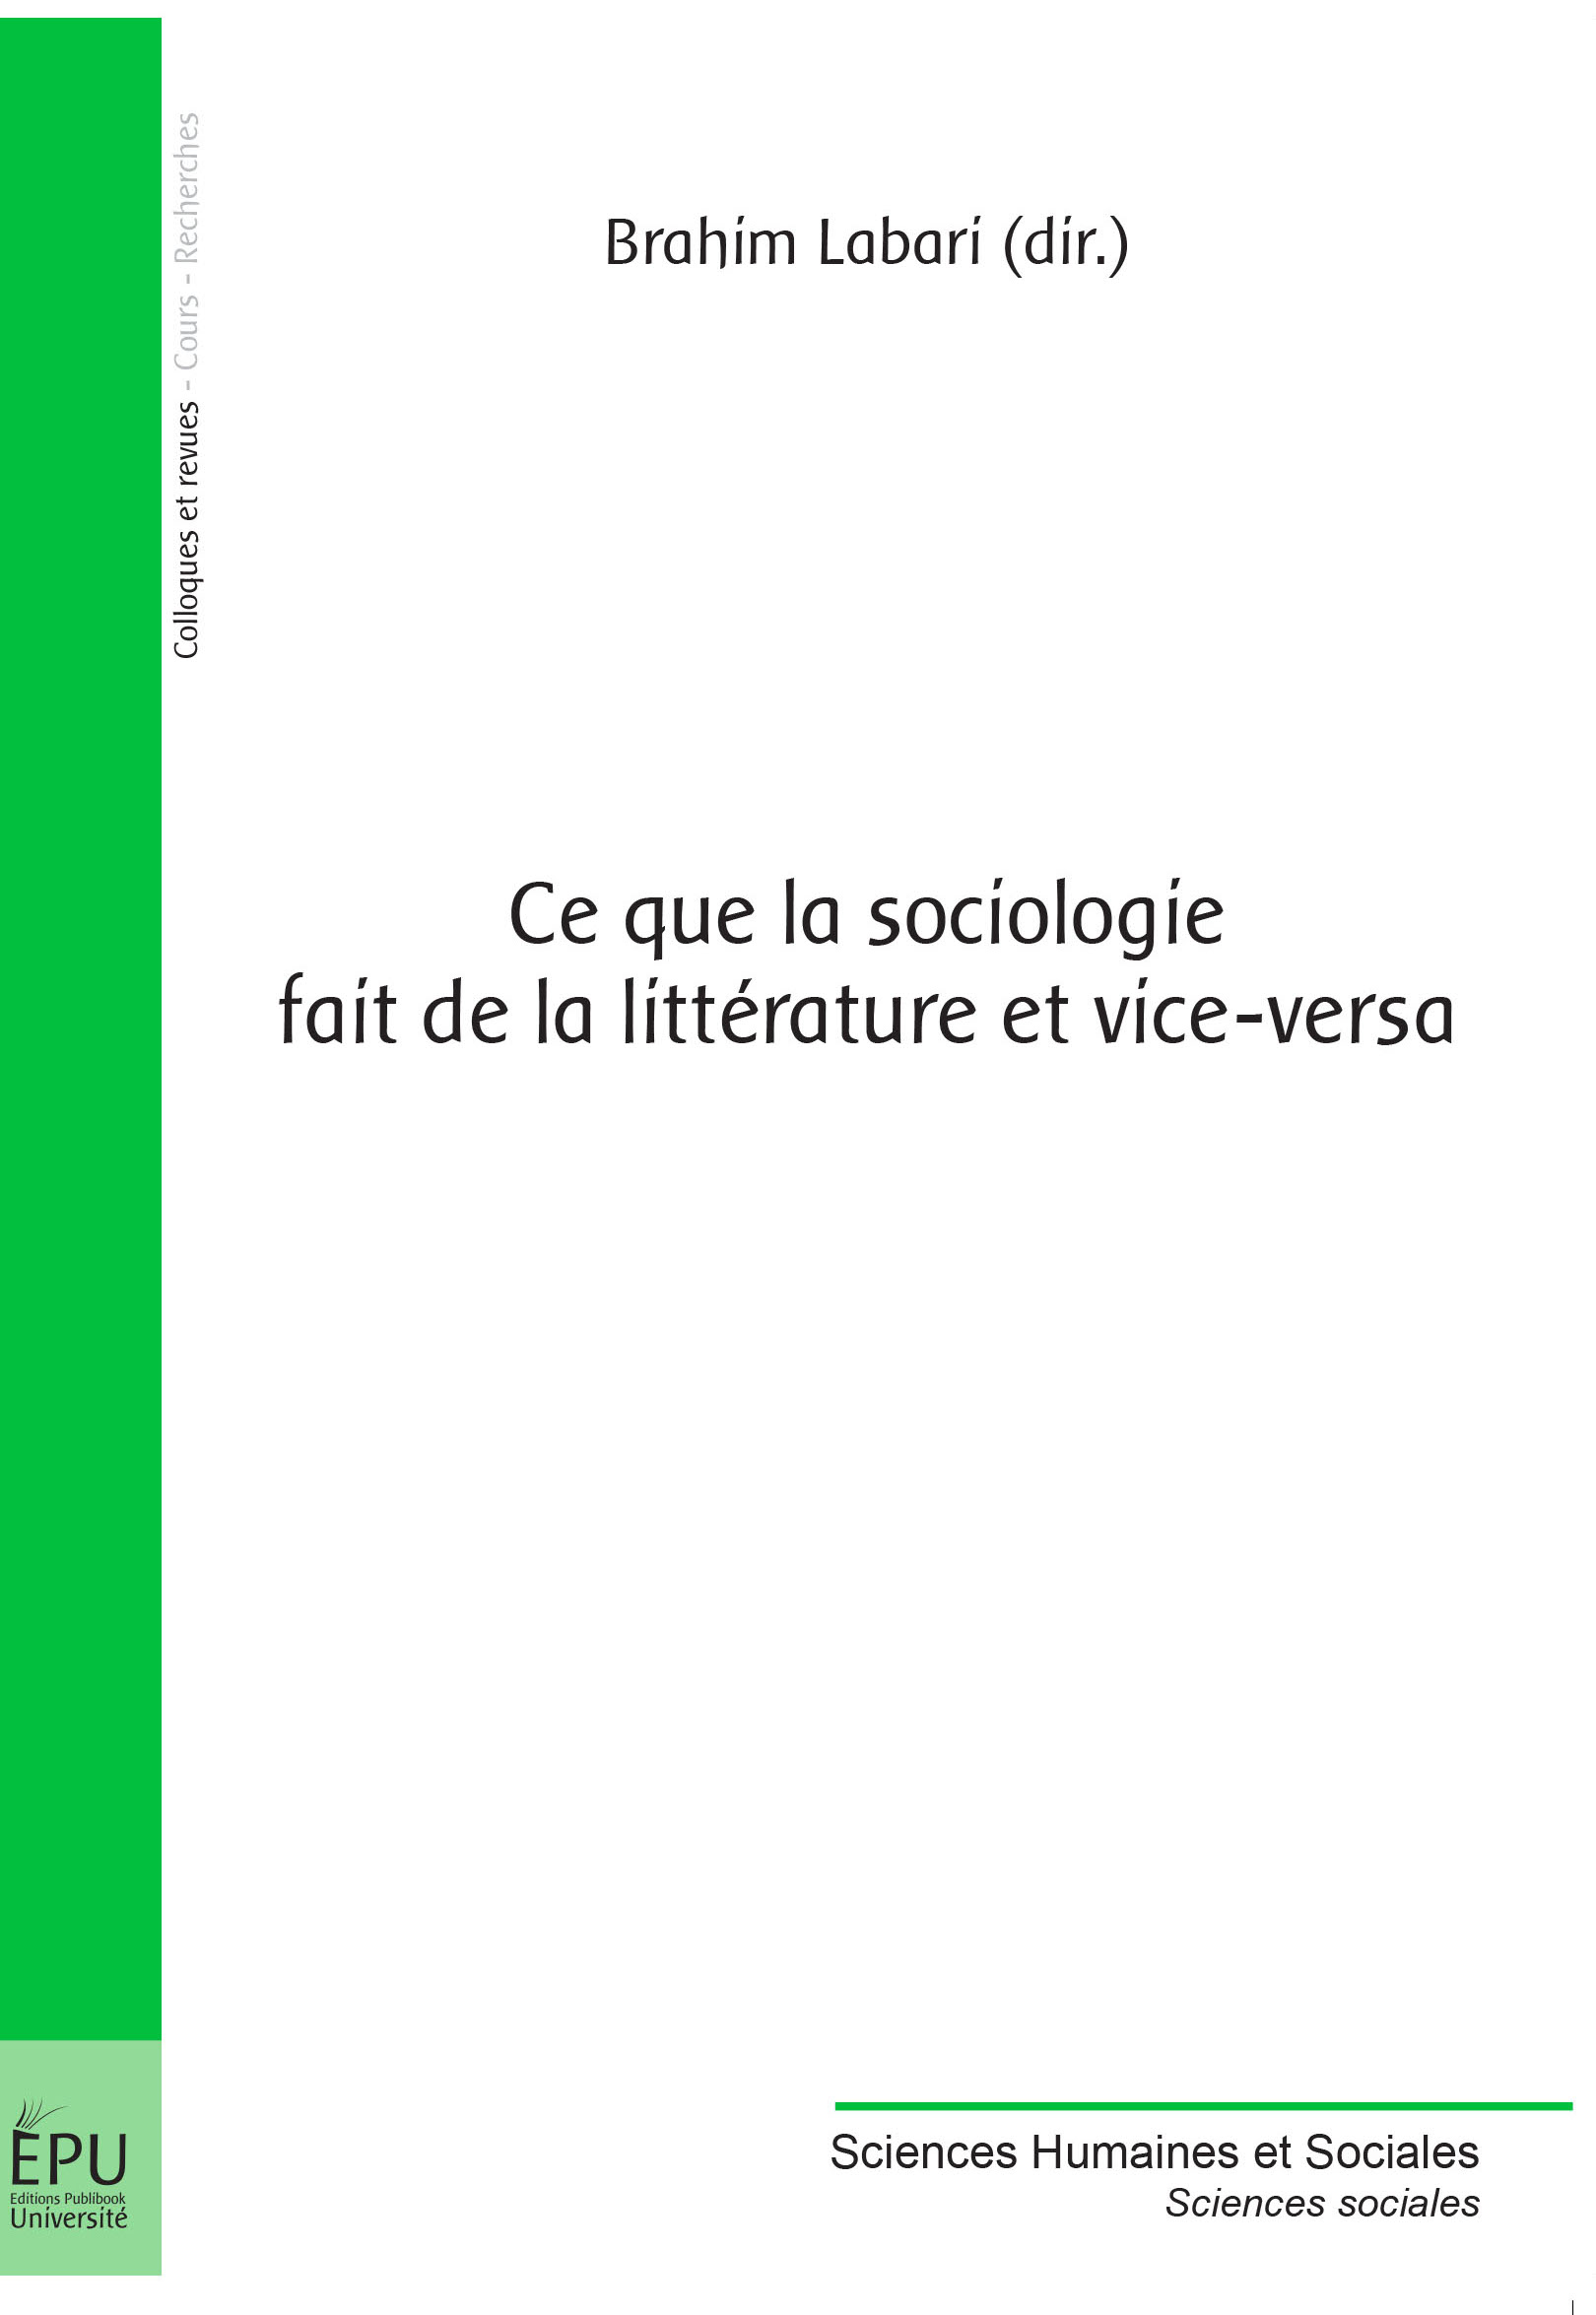 B. Labari (dir.), Ce que la sociologie fait de la littérature et vice-versa